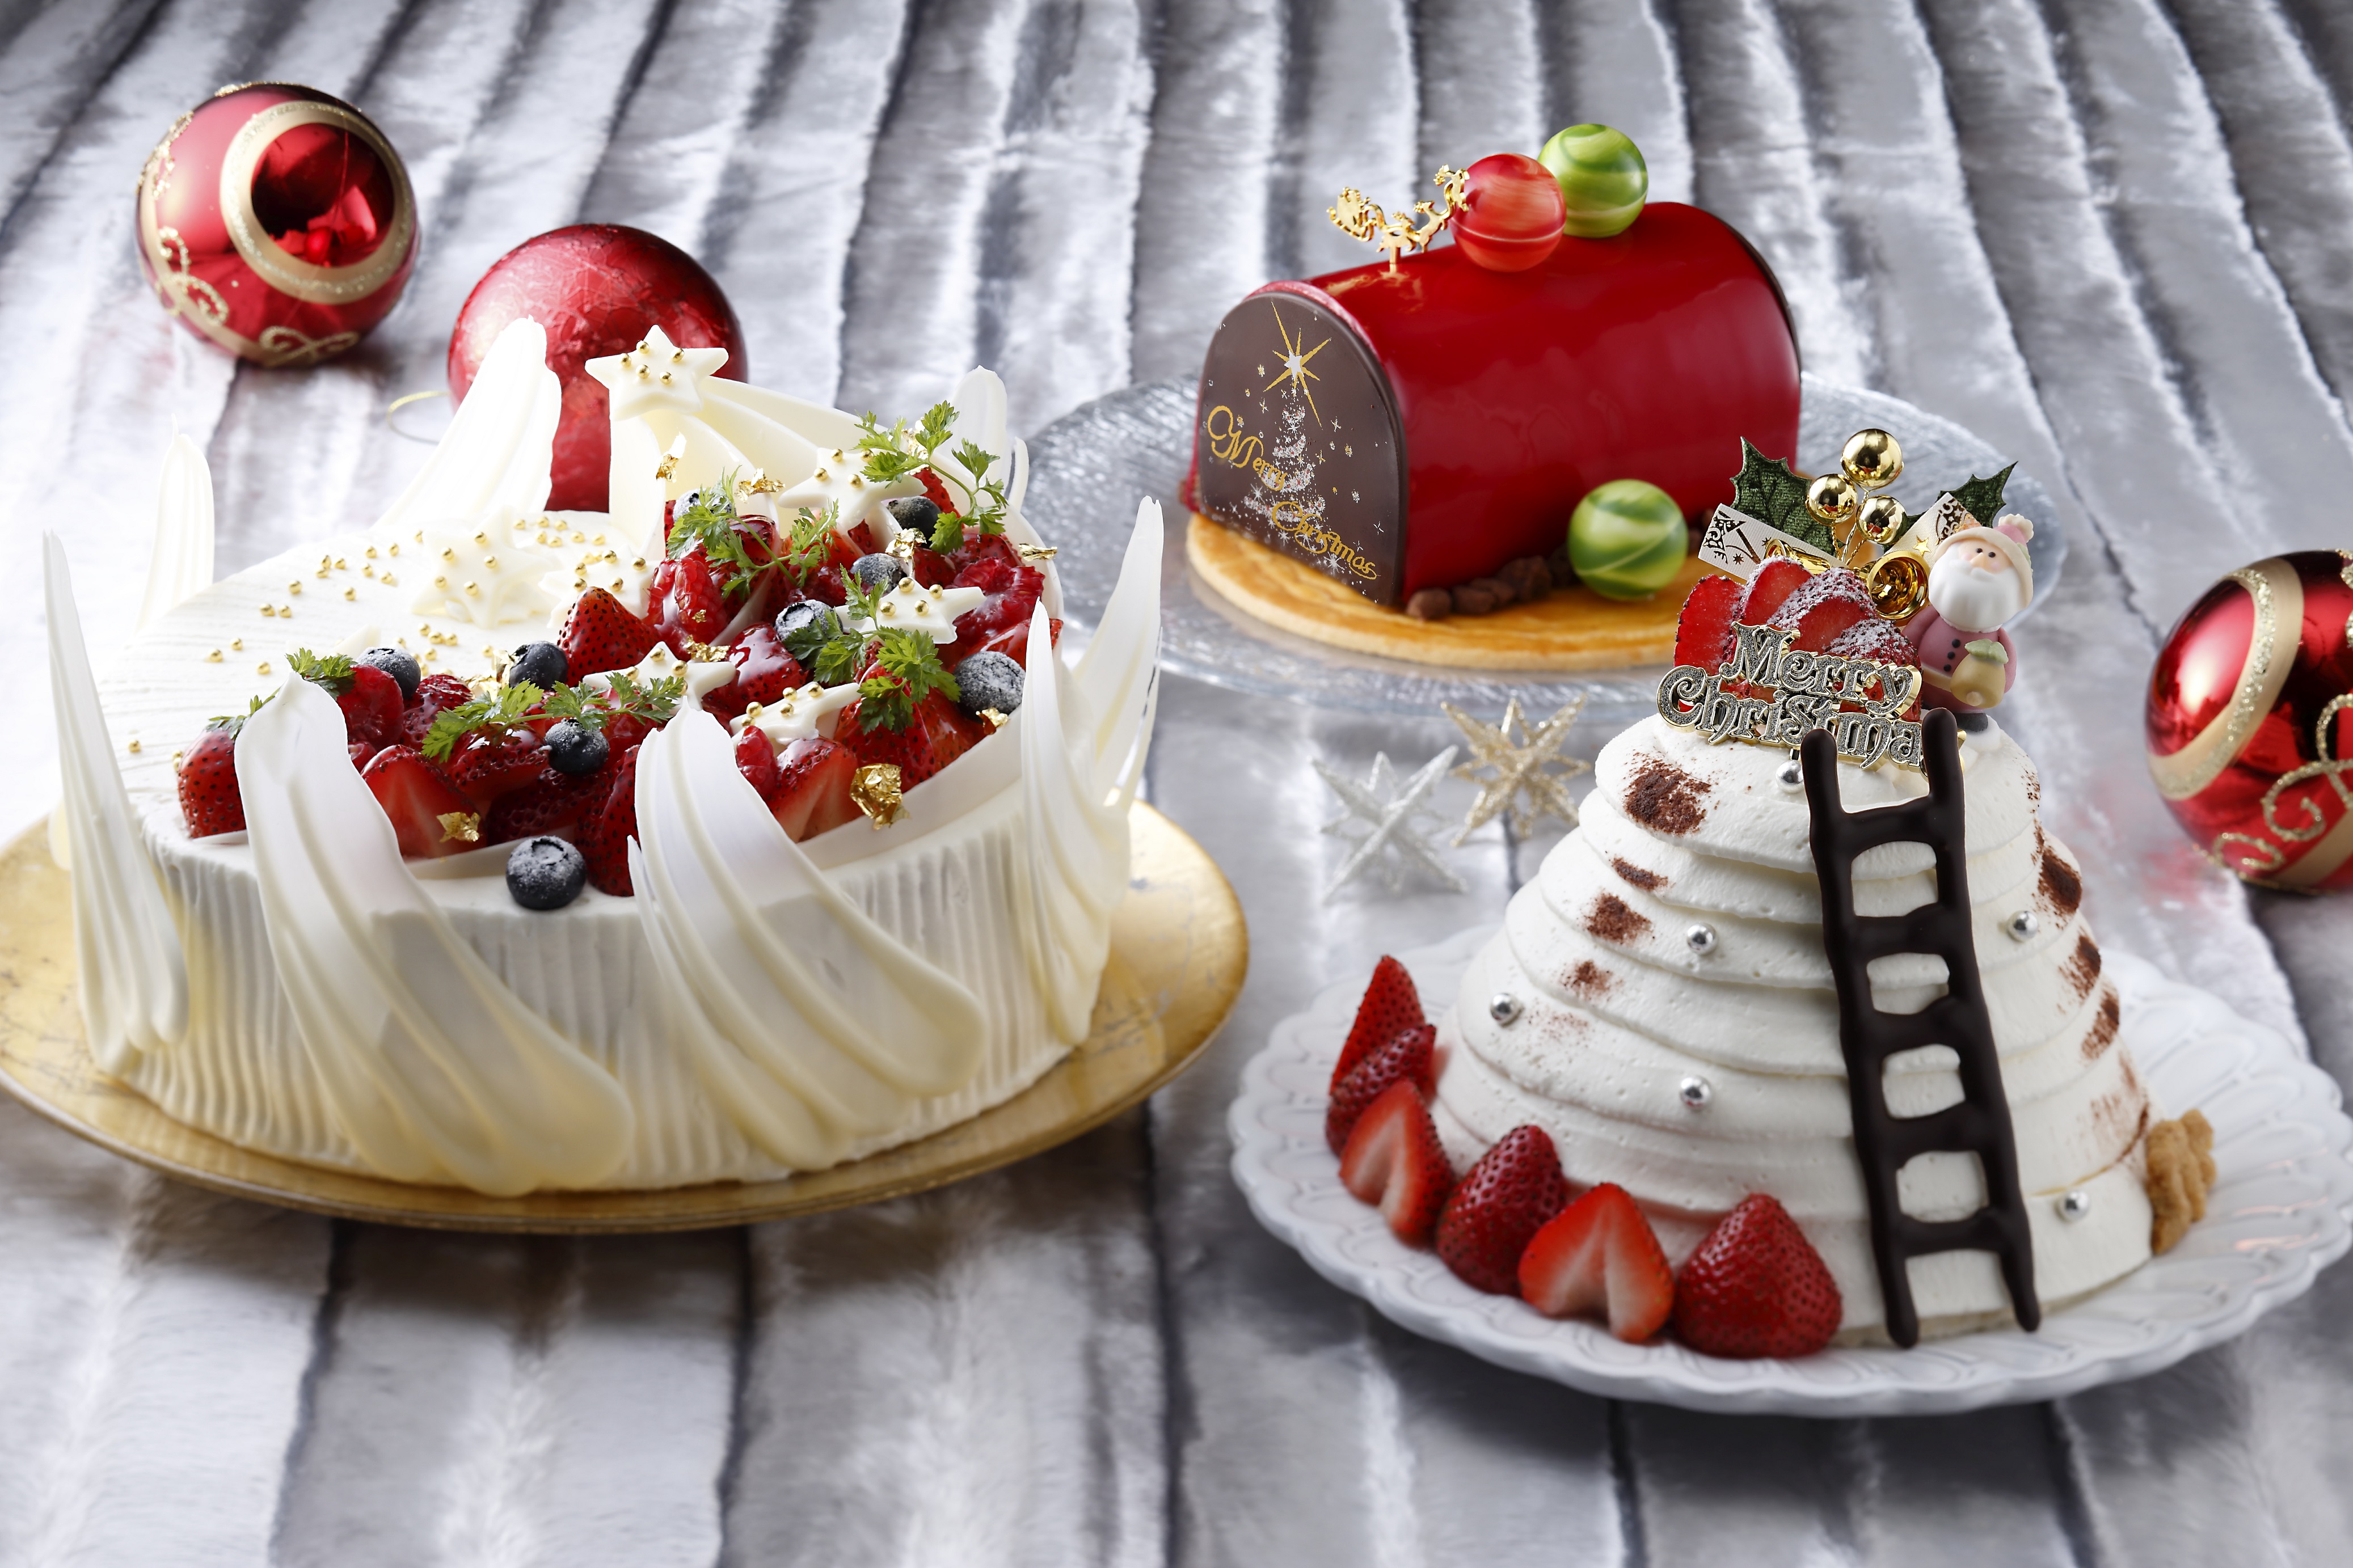 ホテル日航大阪 クリスマスケーキ予約受付開始 ニッコー ホテルズ インターナショナルのプレスリリース